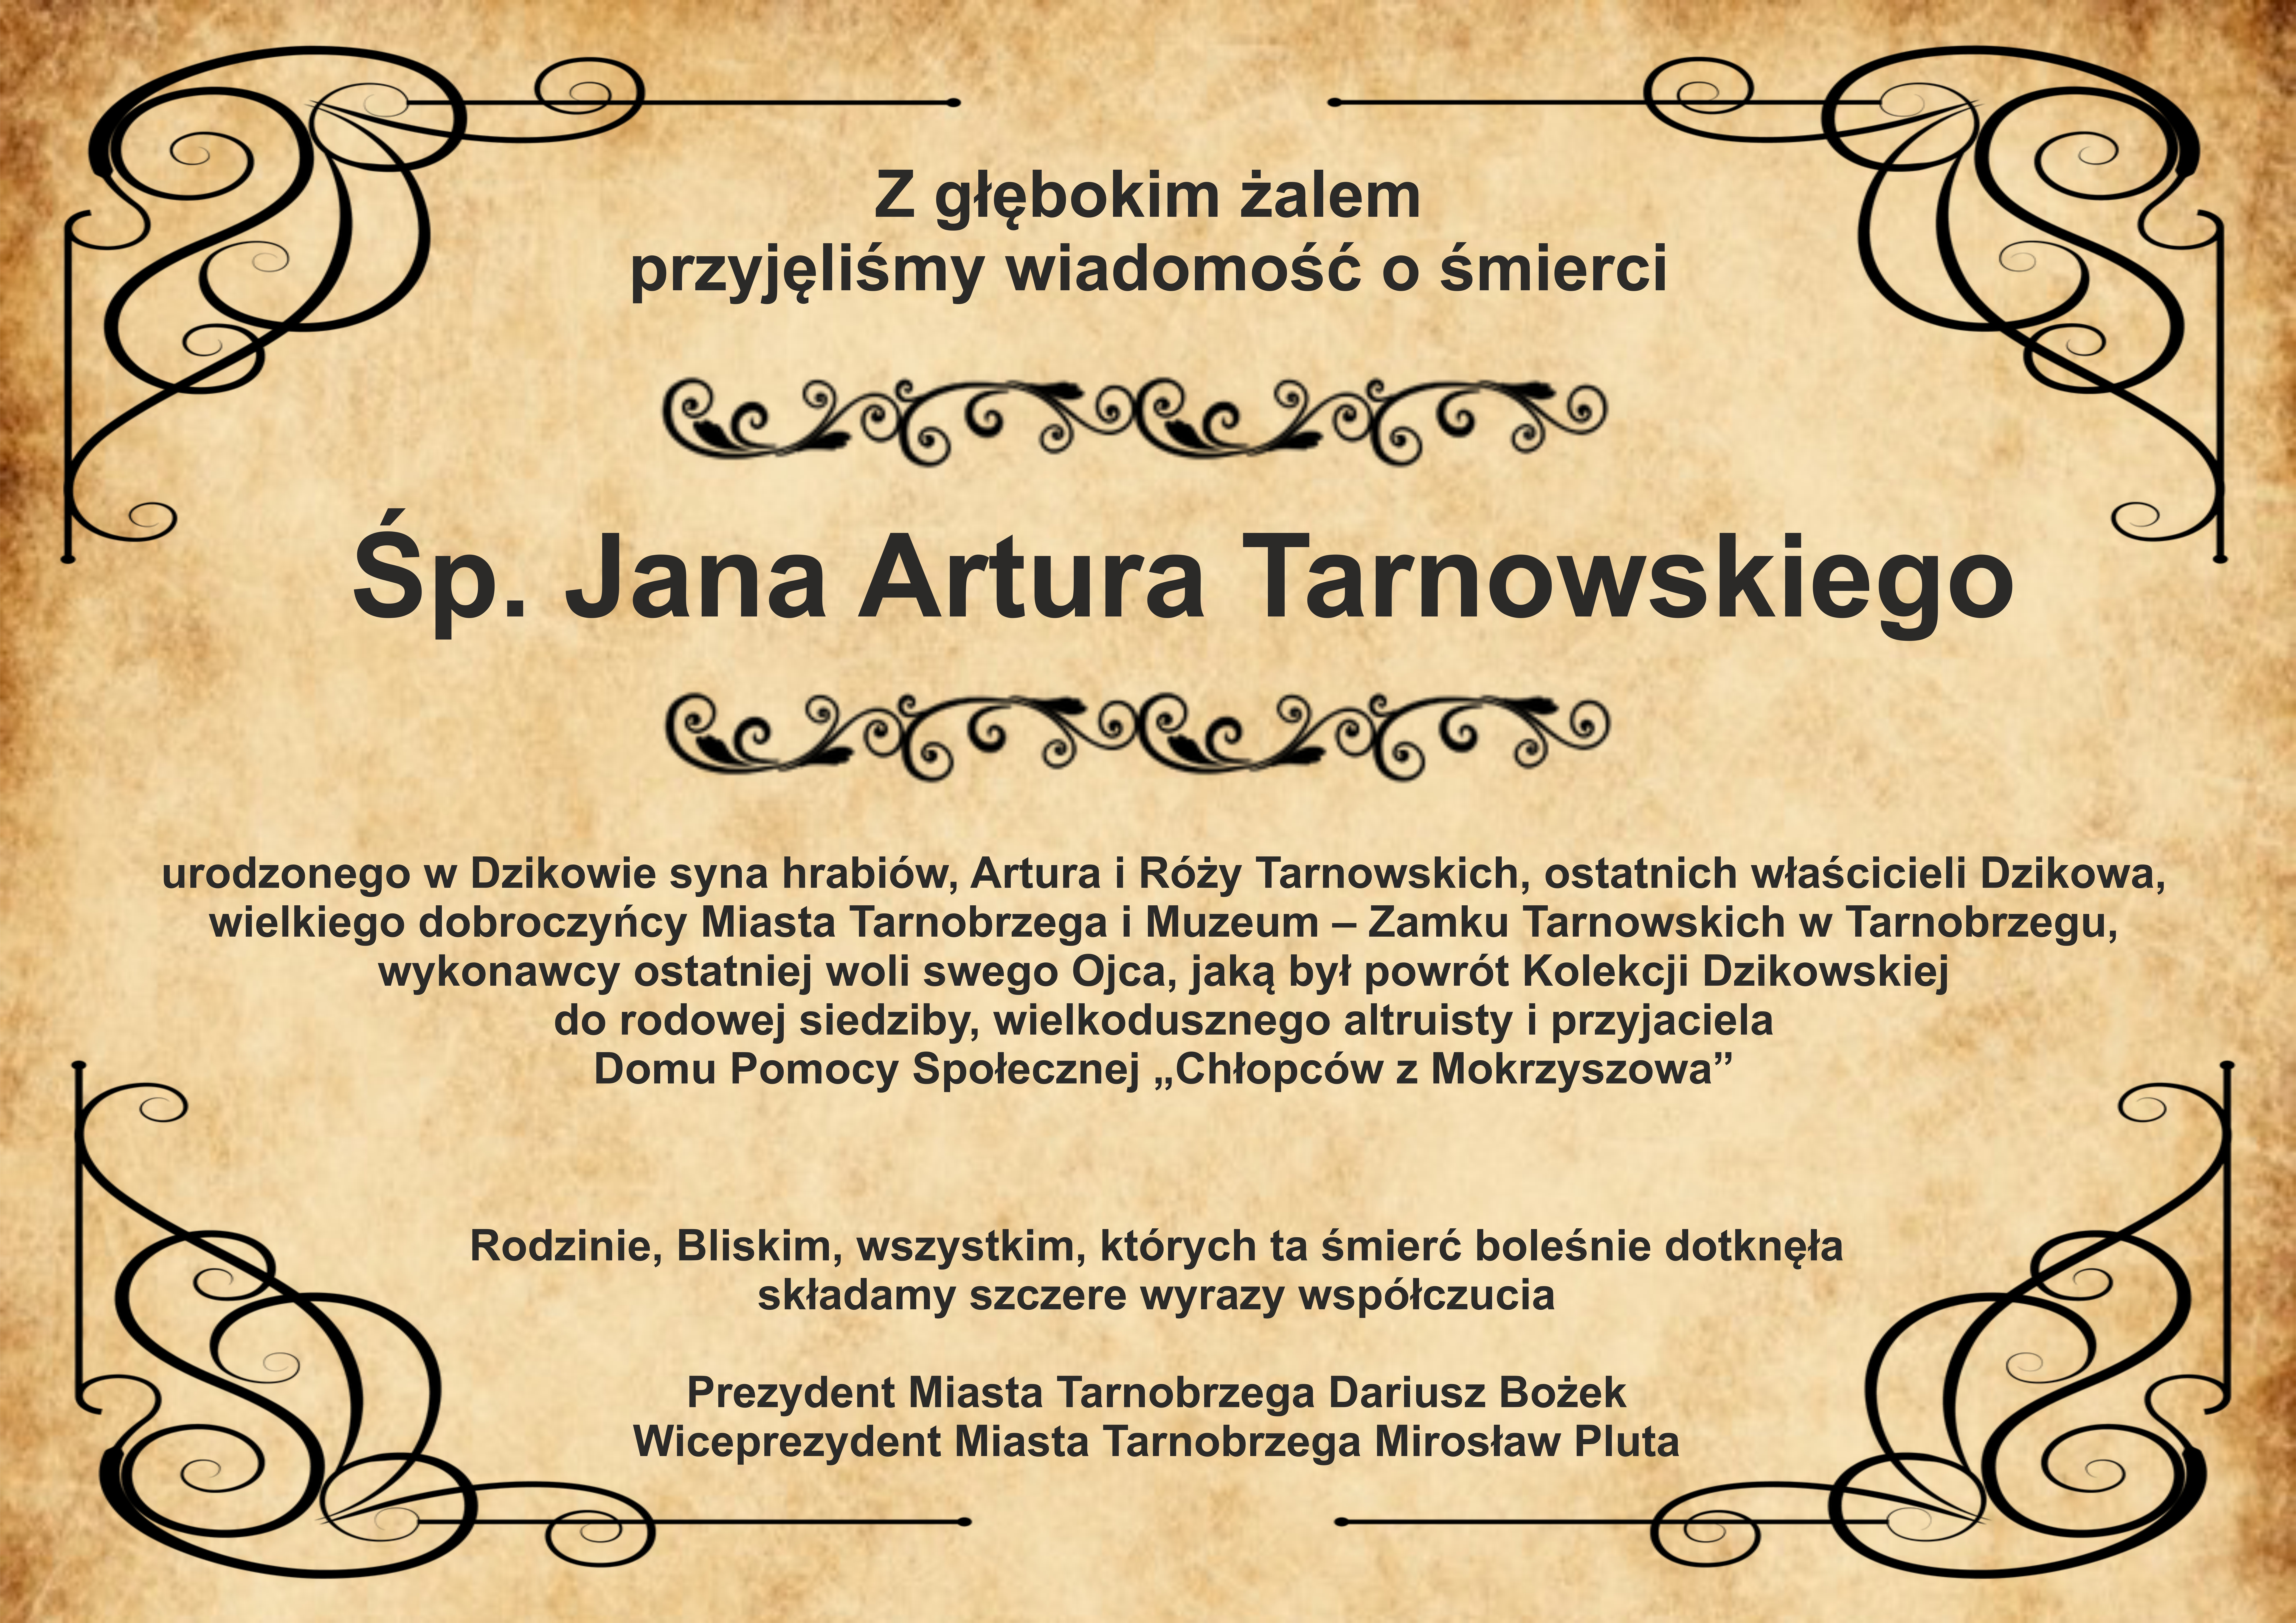 Z głębokim żalem przyjeliśmy wiadomość o śmierci Śp. Jana Artura Tarnowskiego